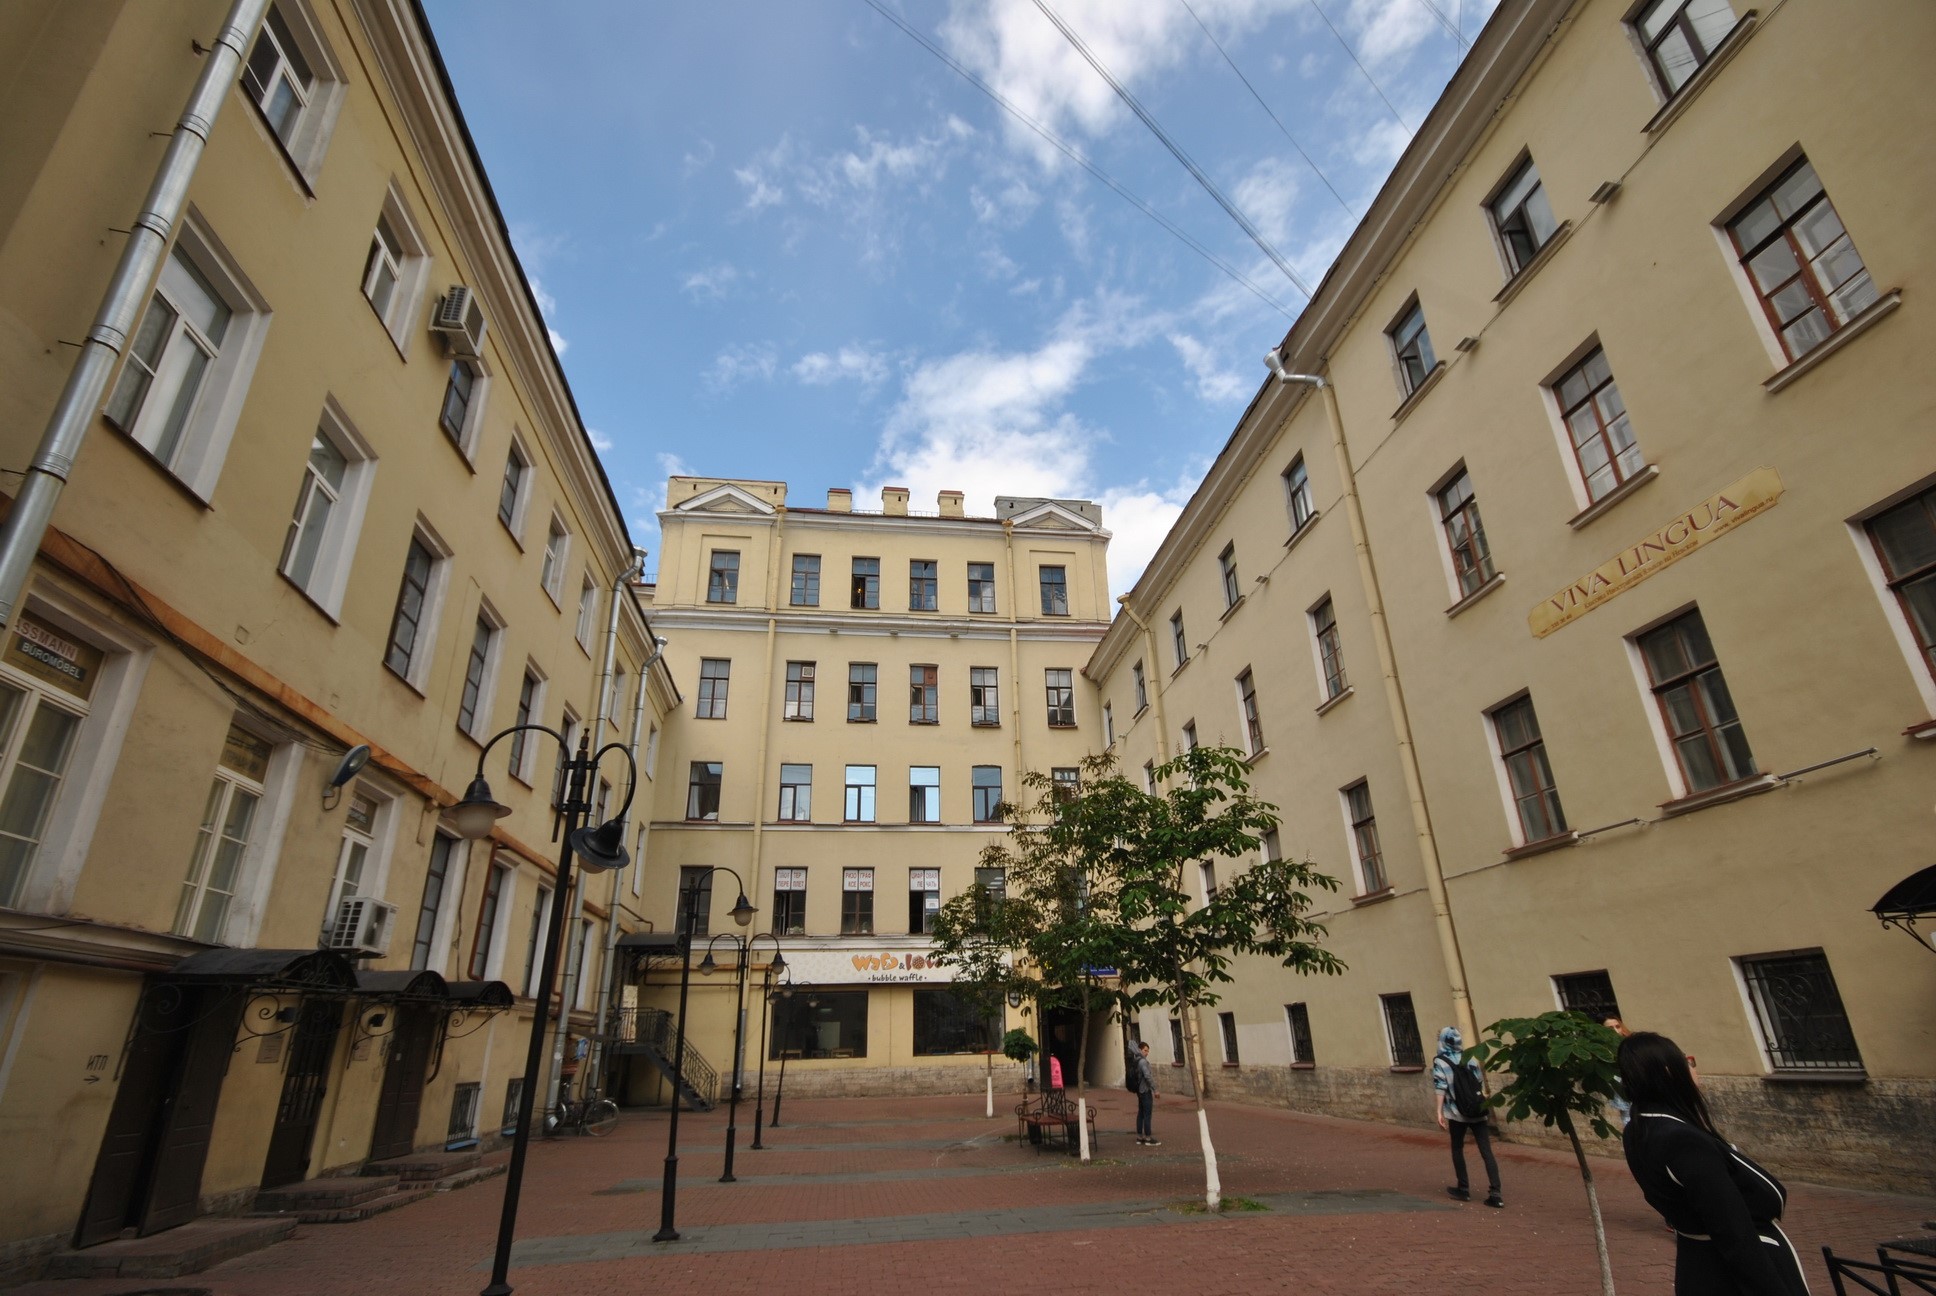 Выполнены работы по визуальному осмотру двух корпусов зданий по адресу: г. Санкт-Петербург, Невский пр., д. 32-34.